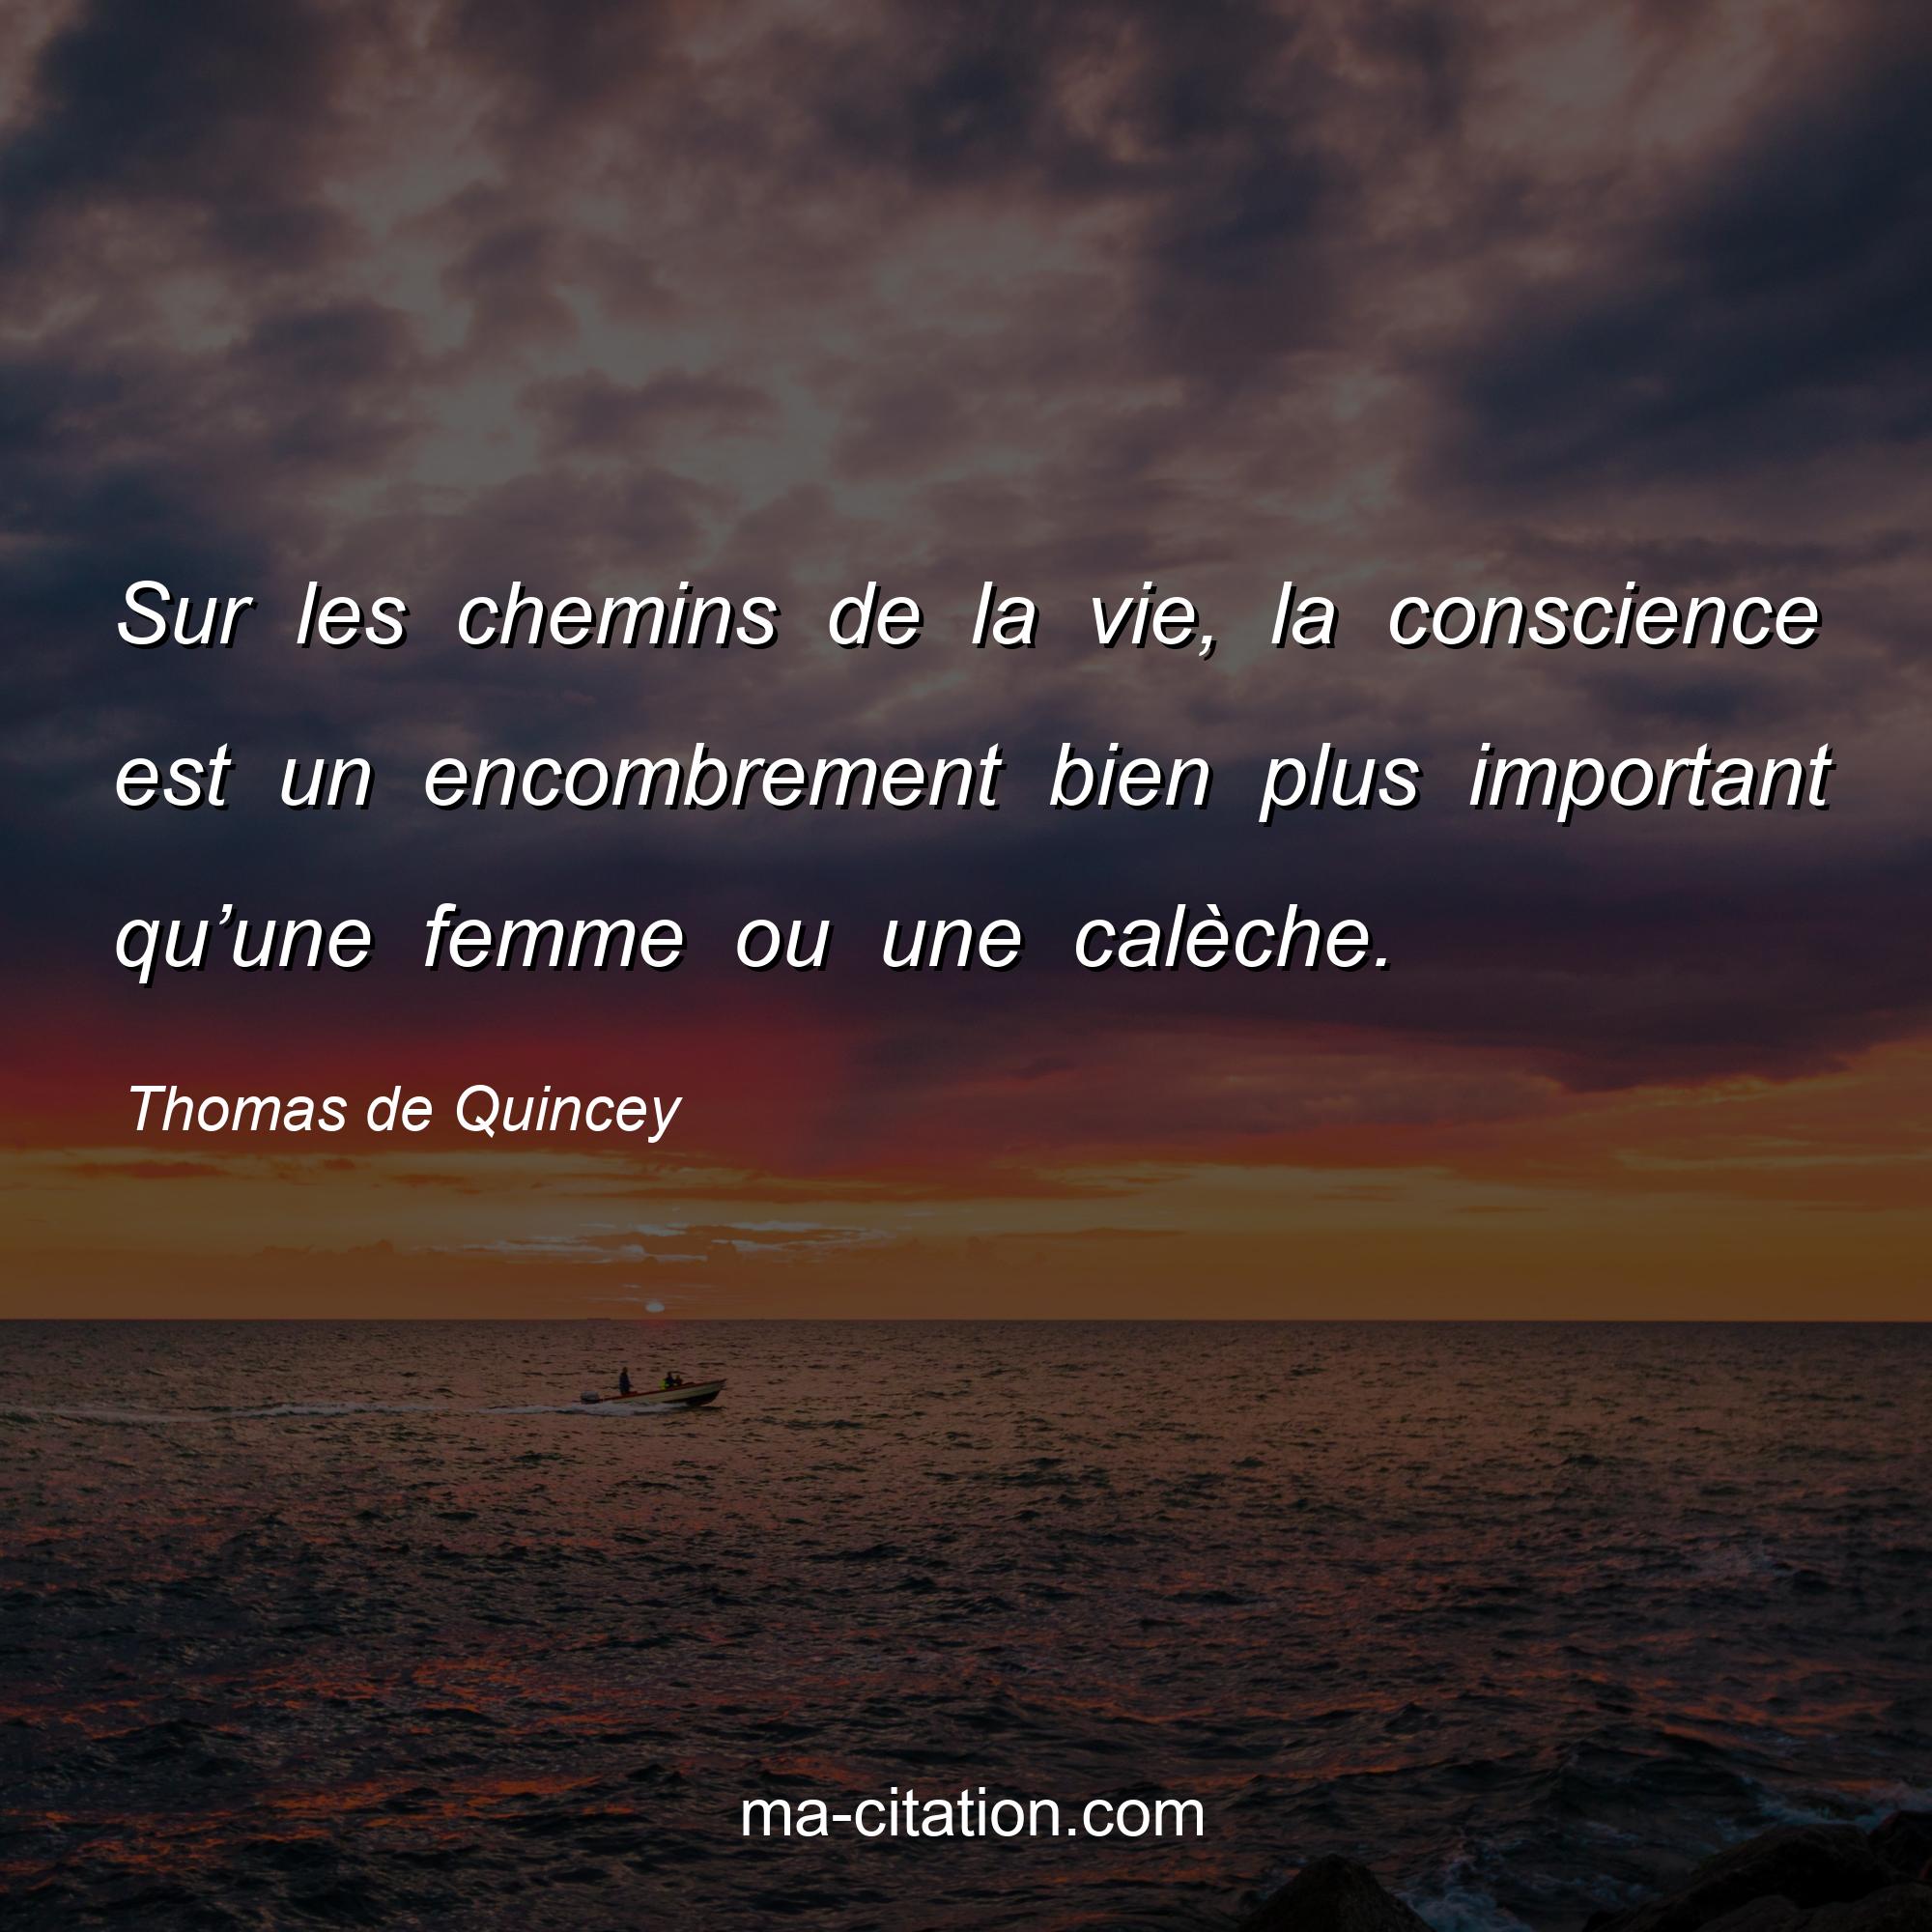 Thomas de Quincey : Sur les chemins de la vie, la conscience est un encombrement bien plus important qu’une femme ou une calèche.